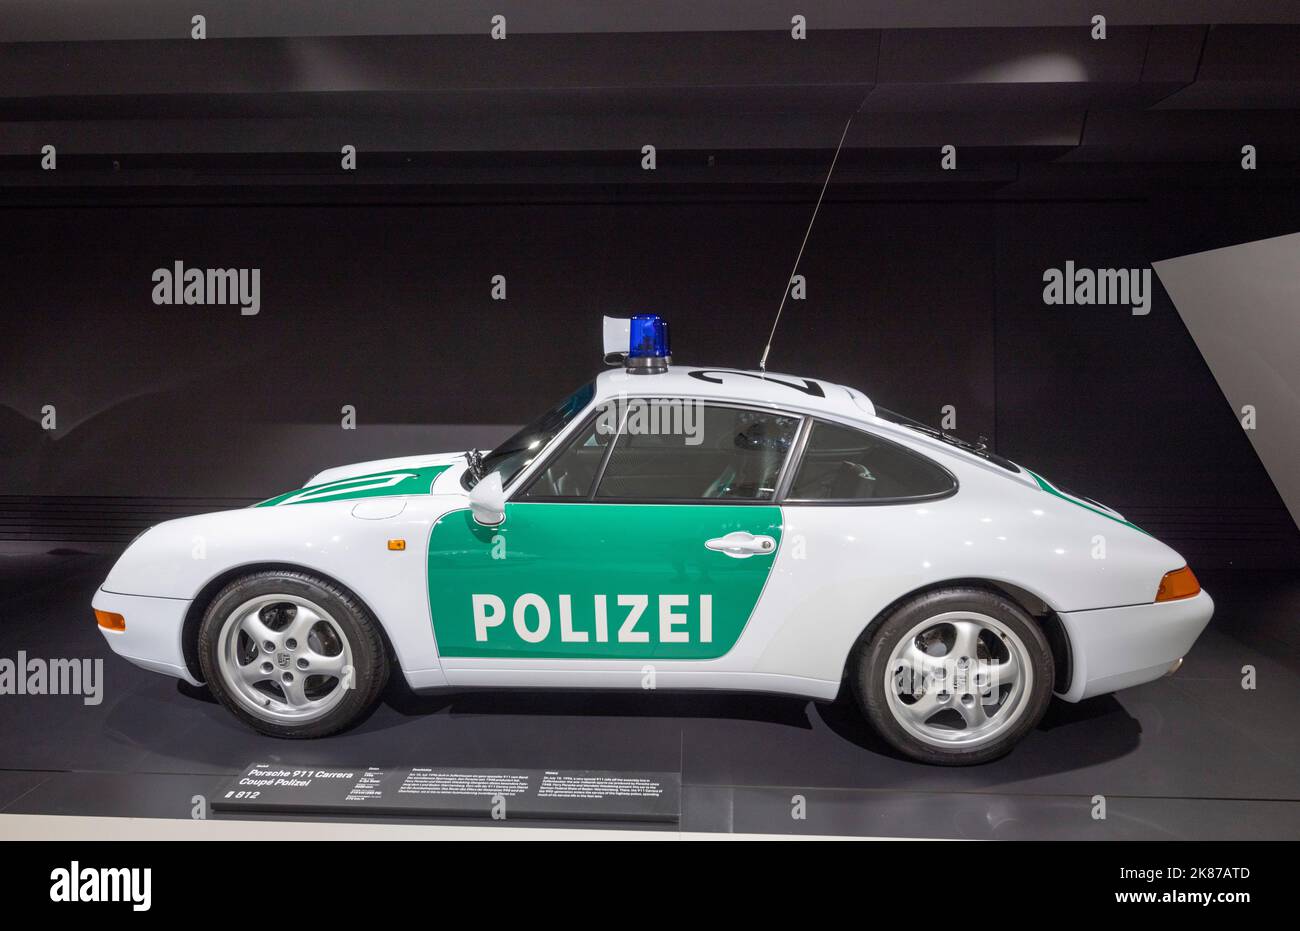 1996 Porsche 911 Carrera Police (polizei), il Museo Porsche, Stoccarda, Germania Foto Stock